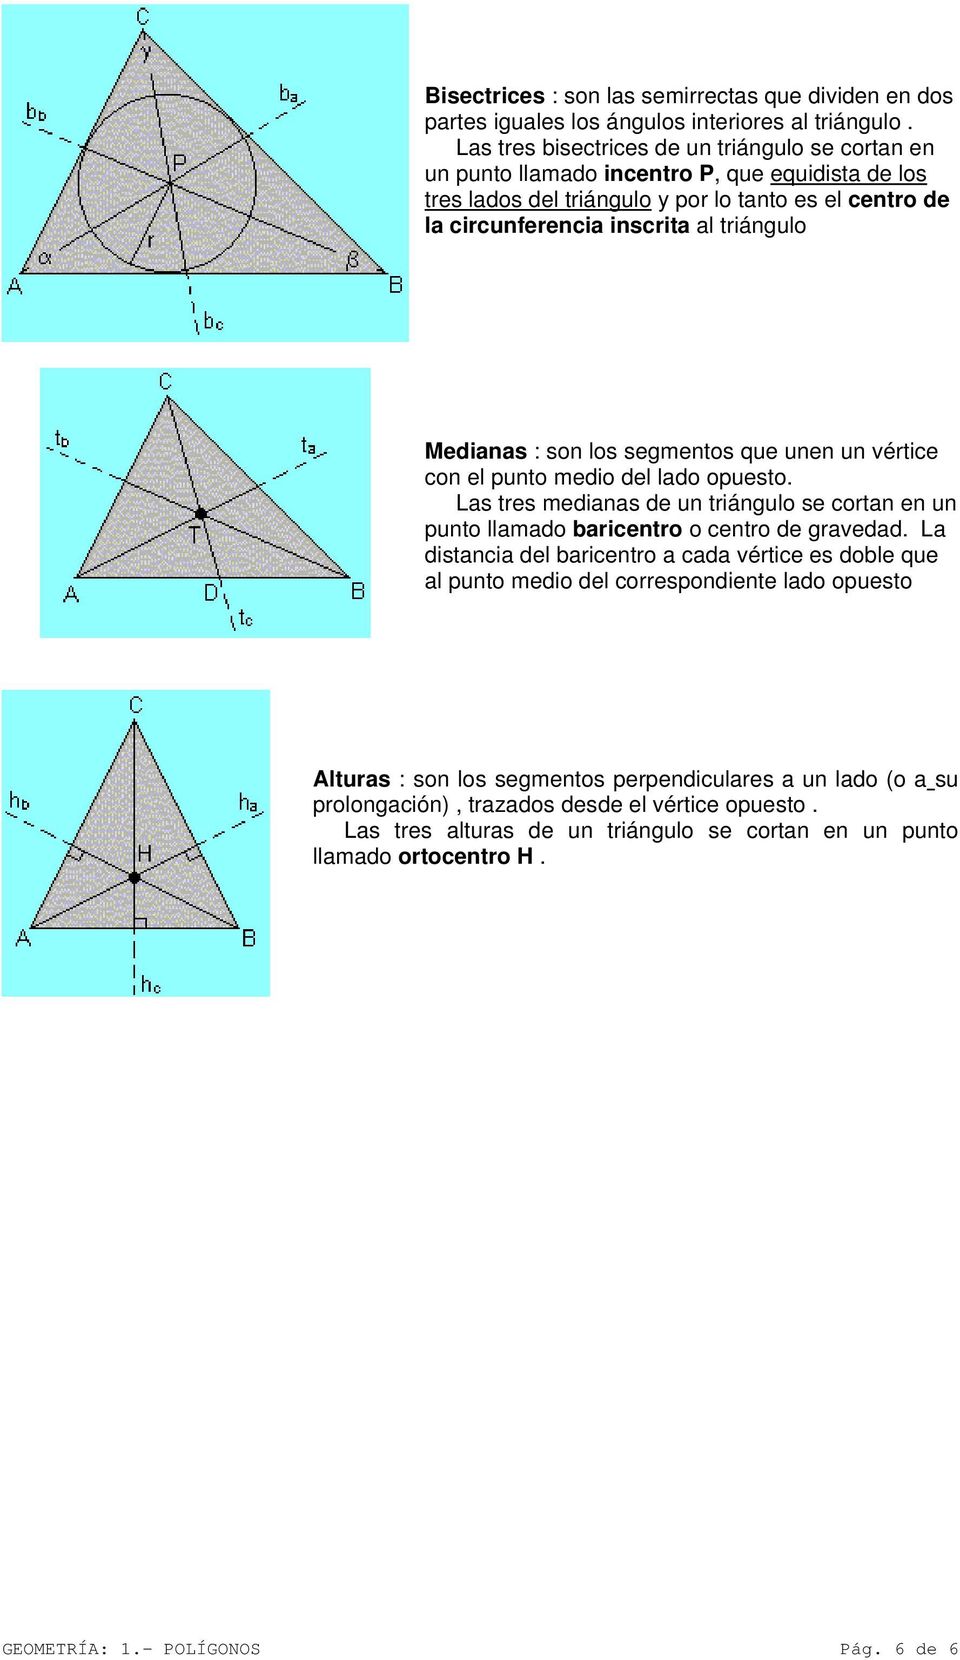 Medianas : son los segmentos que unen un vértice con el punto medio del lado opuesto. Las tres medianas de un triángulo se cortan en un punto llamado baricentro o centro de gravedad.